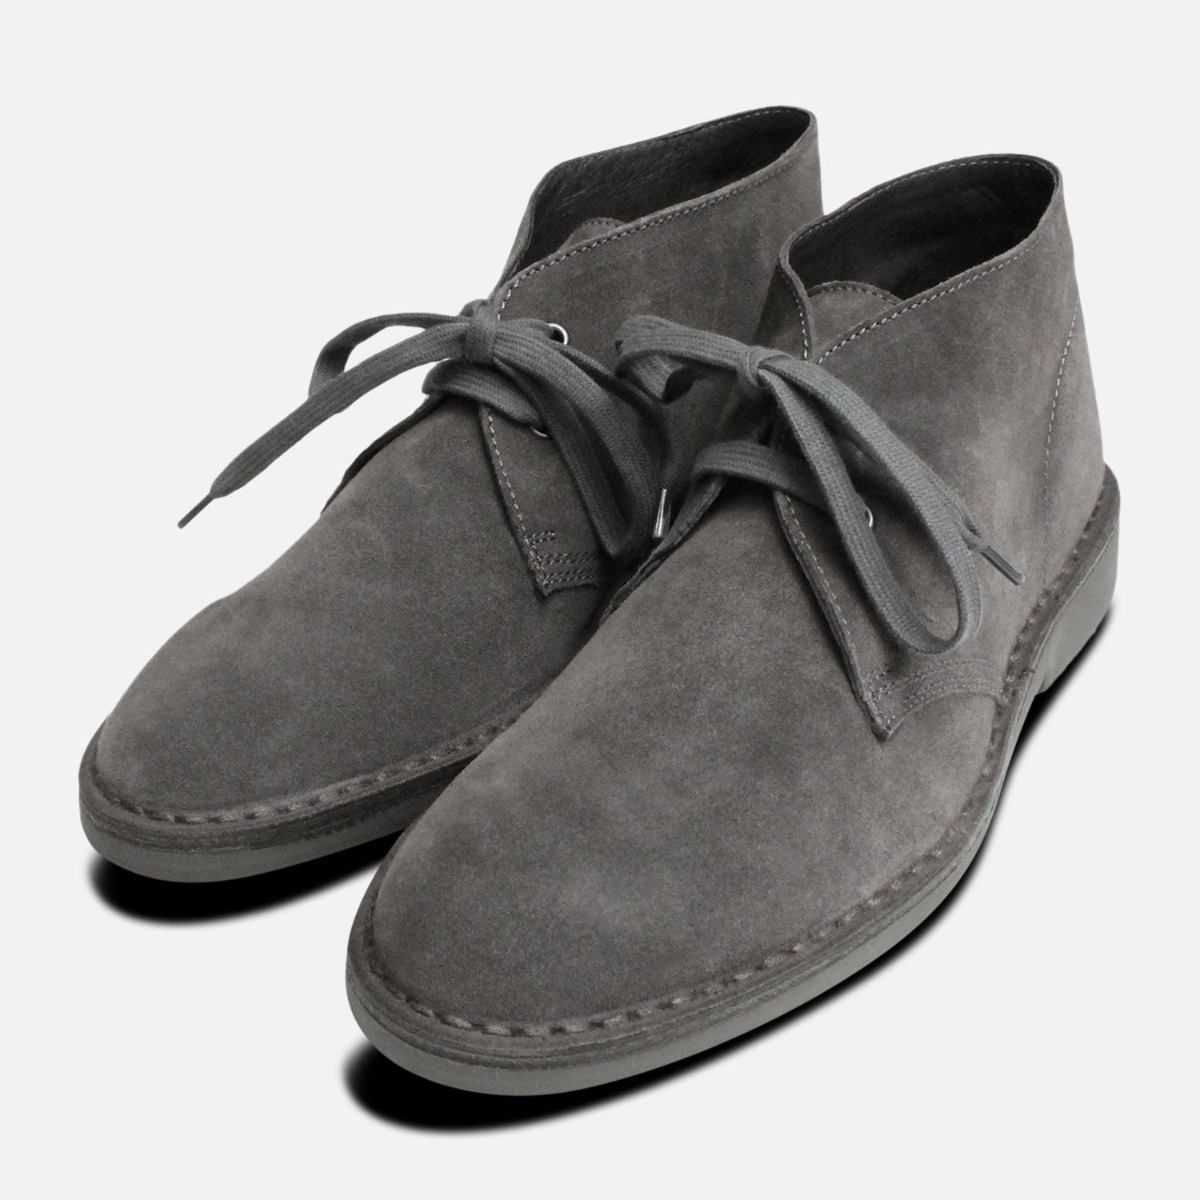 dark grey desert boots